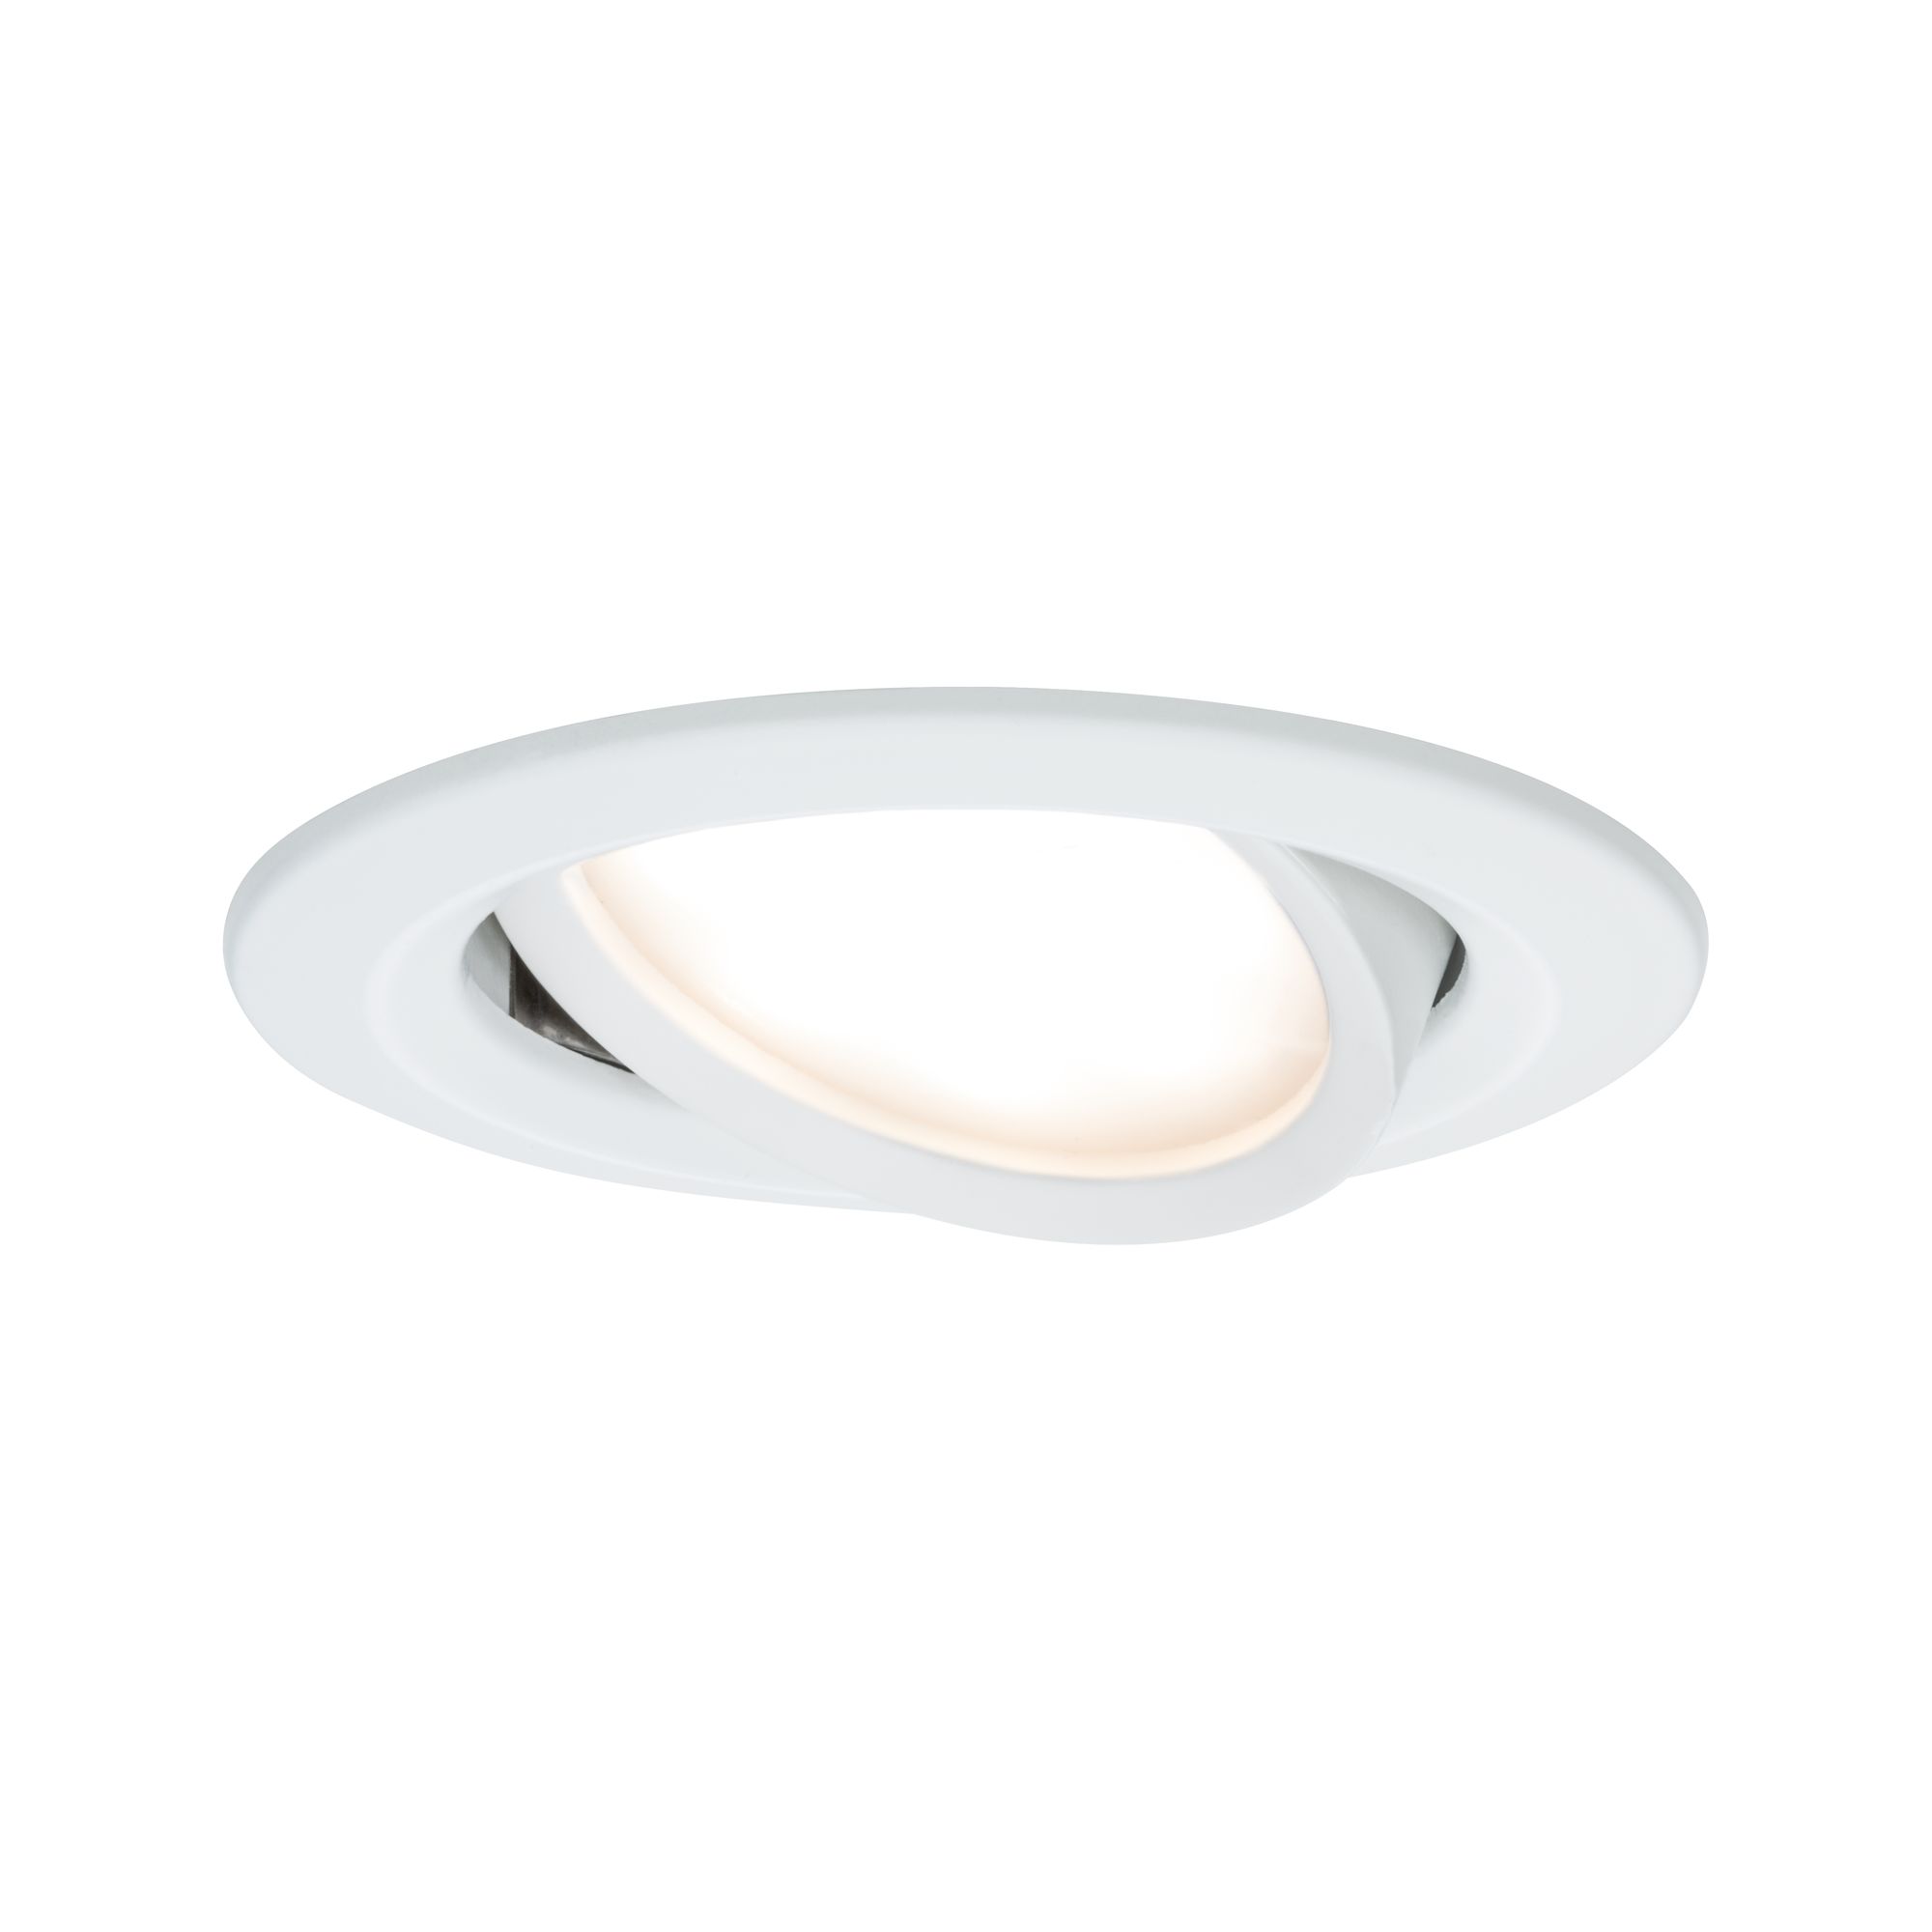 PAULMANN - Vestavné svítidlo LED Nova kruhové 1x6,5W bílá mat nastavitelné 3-krokové-stmívatelné, P 93484